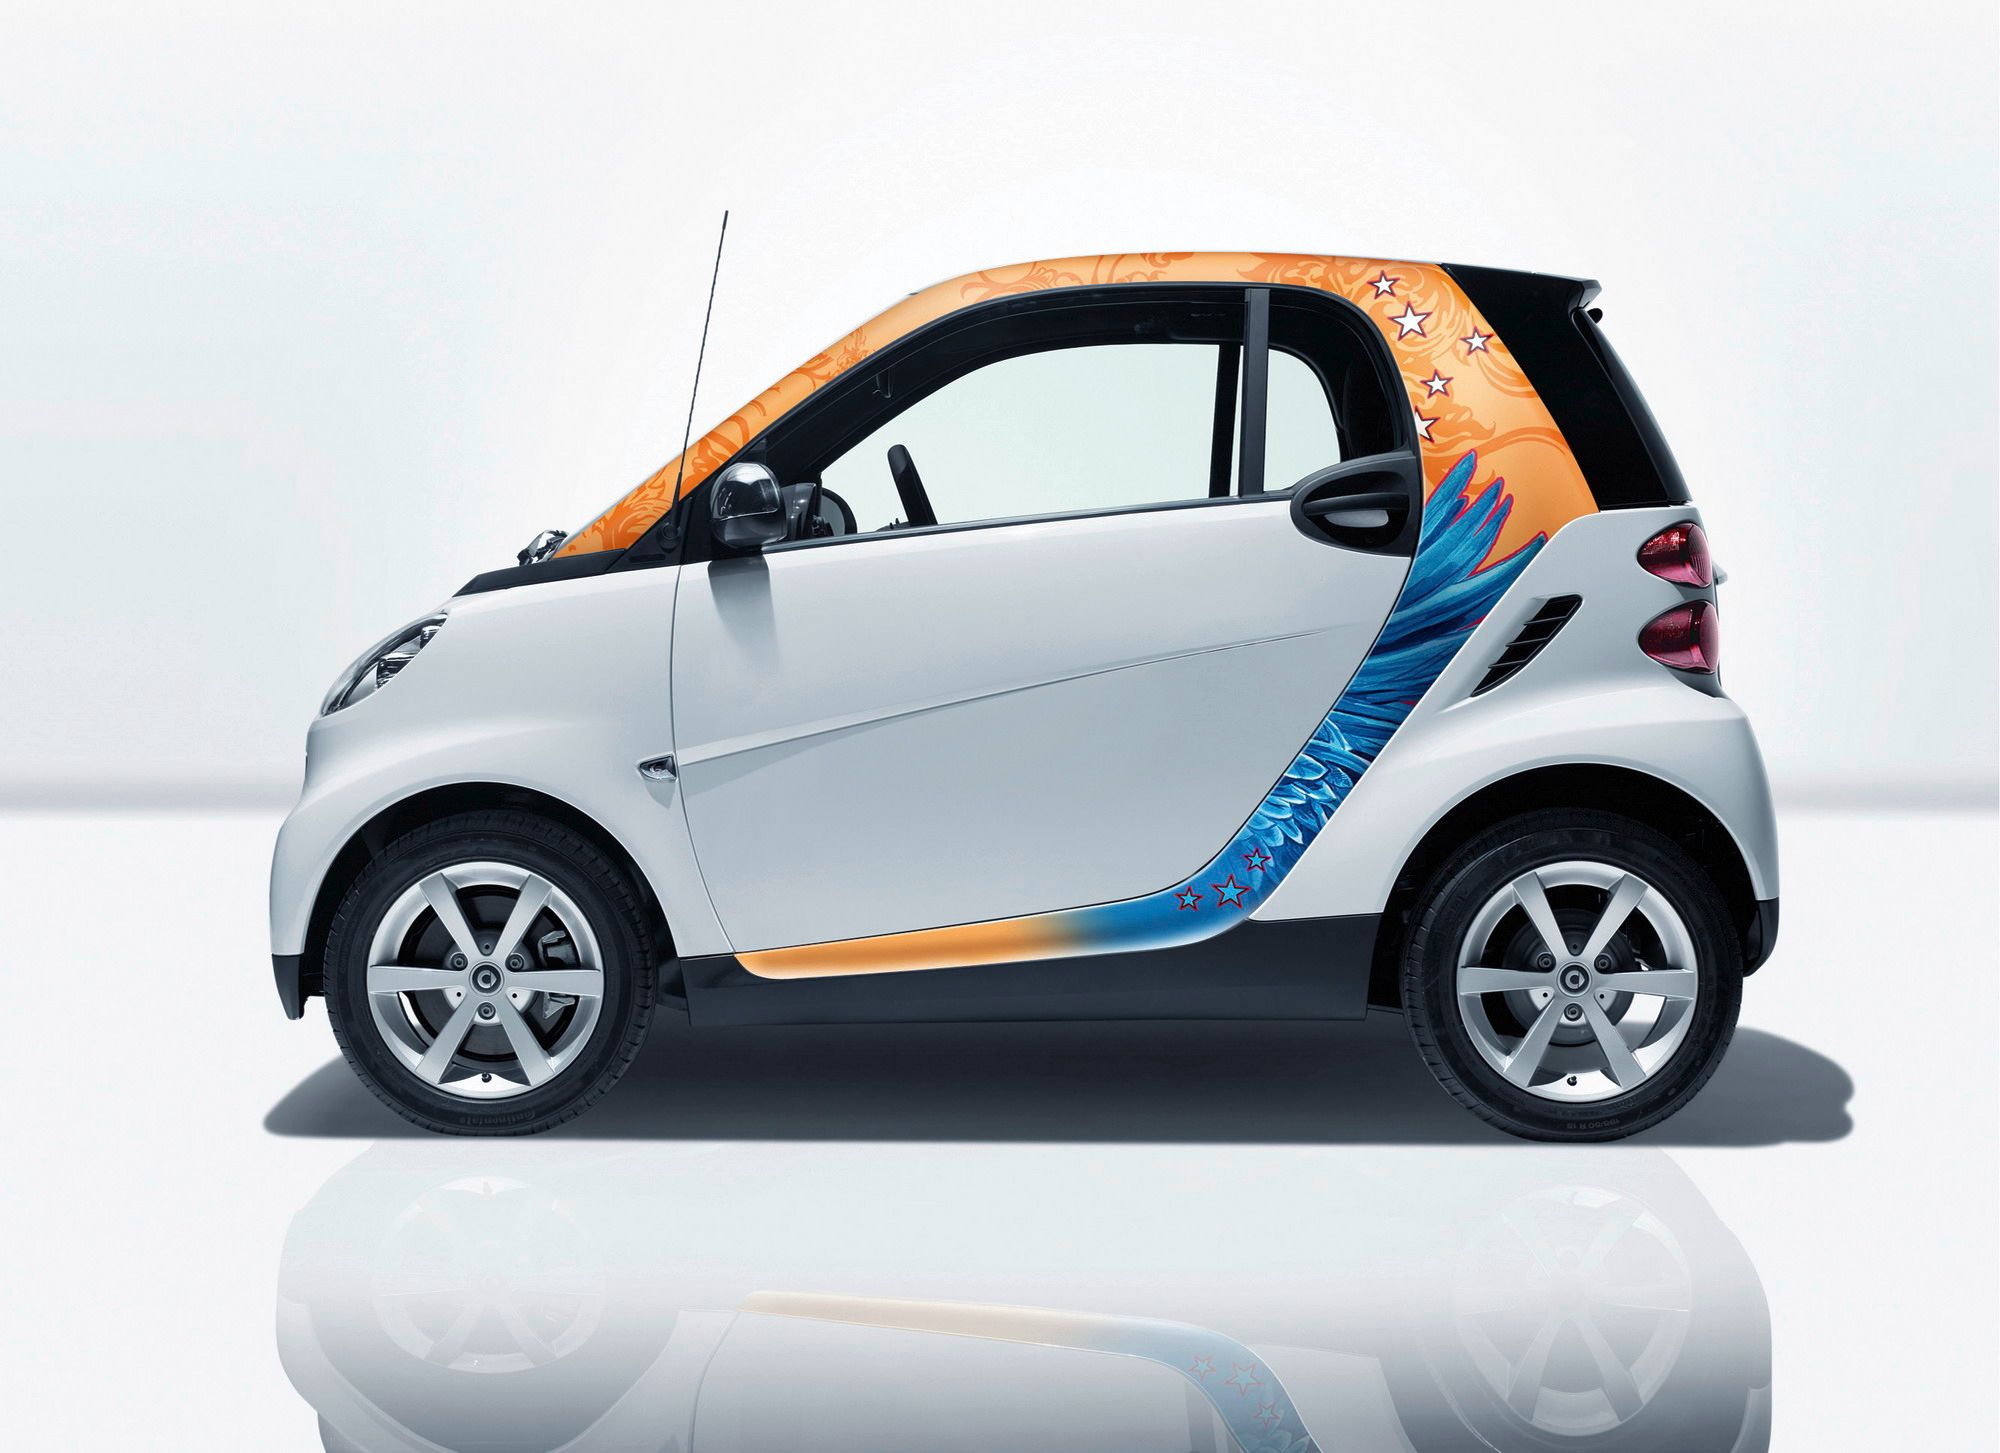 The new smart fortwo cabrio - Car Body Design